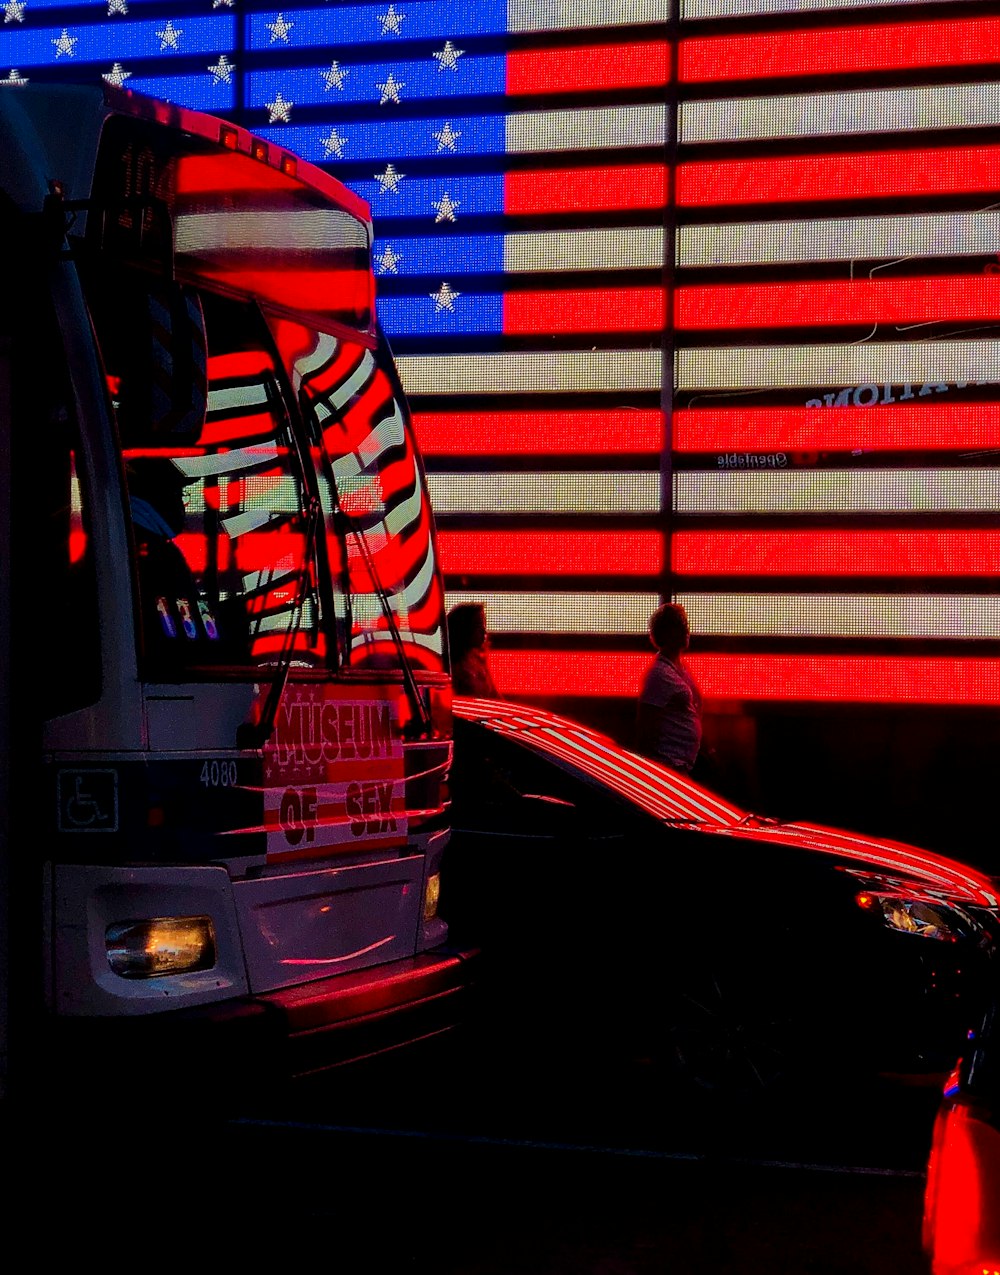 uomo in giacca rossa in piedi accanto all'autobus rosso durante la notte